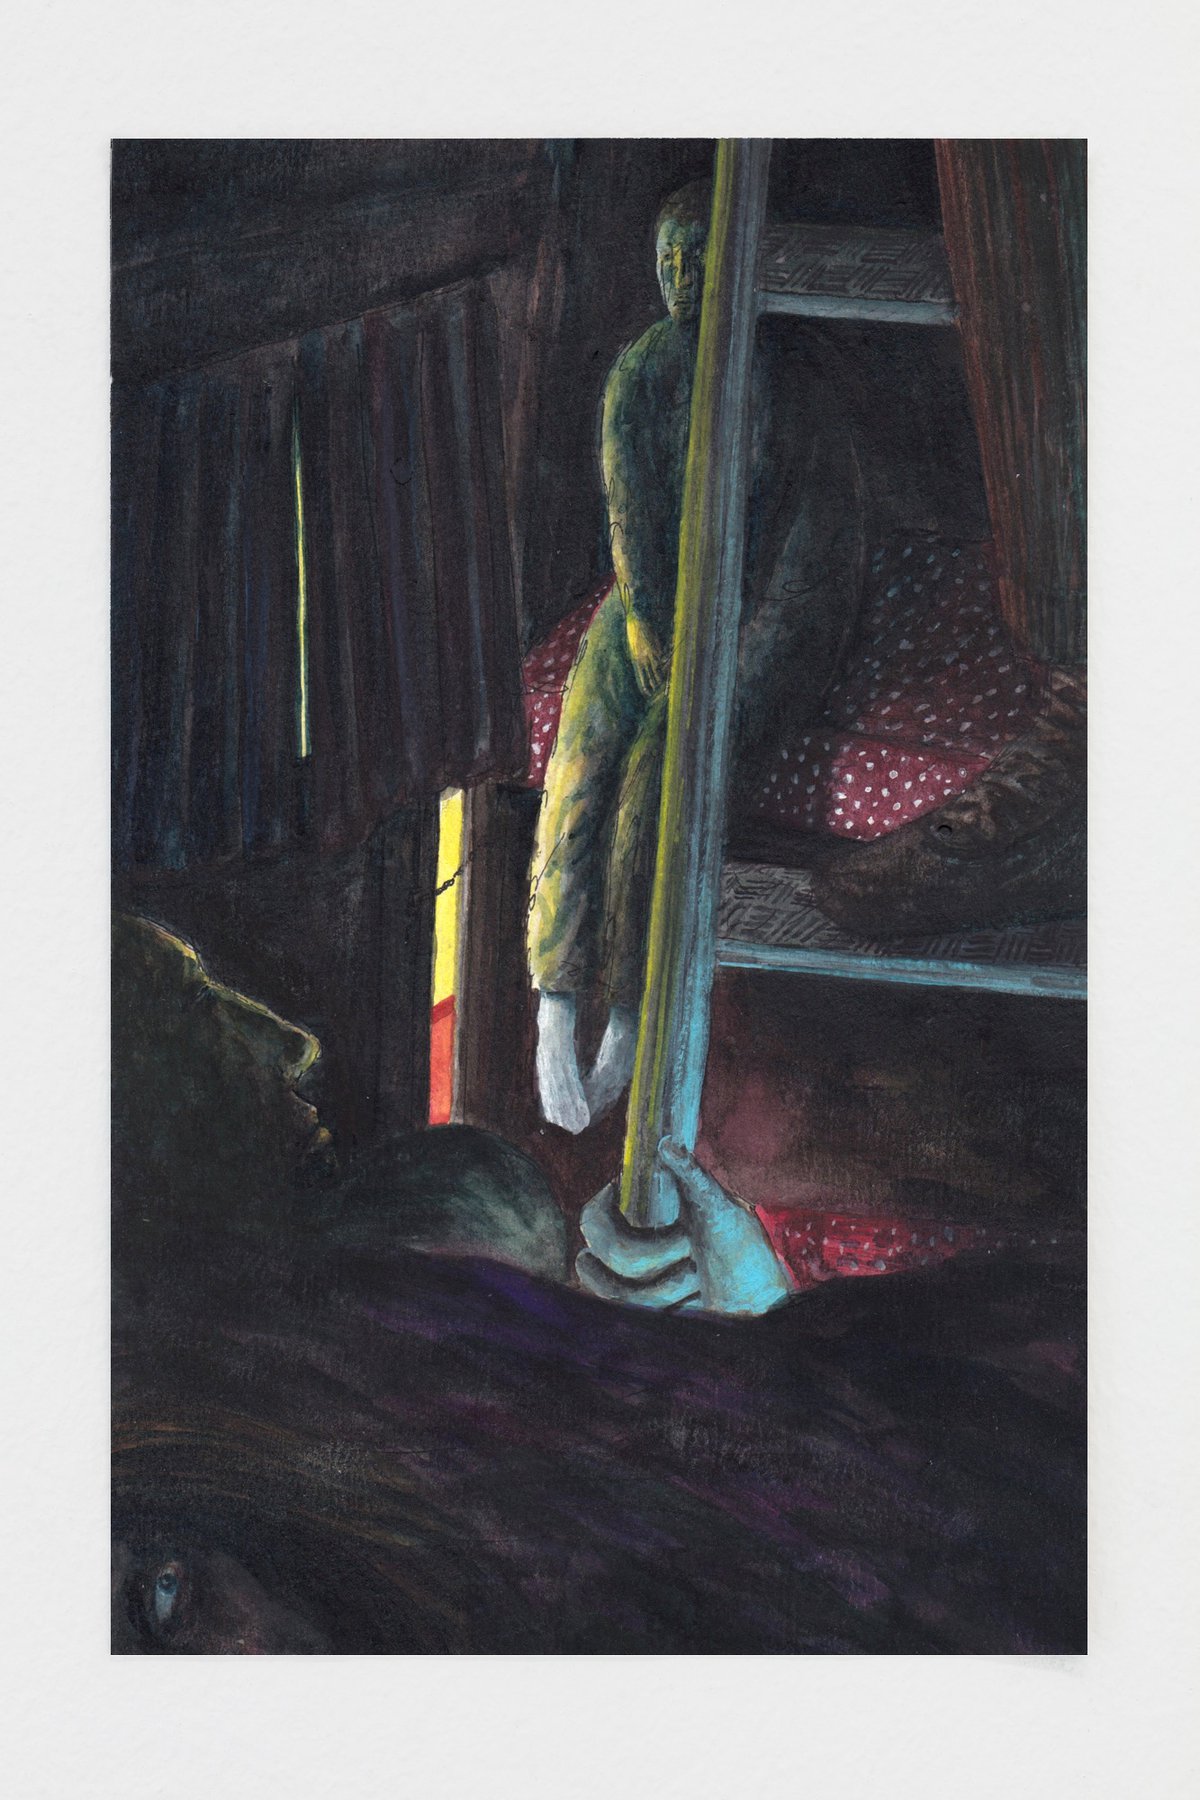 Matthias NogglerLocked Door, 2020Gouache, watercolor and pencil on paper20,5 x 13,2 cm